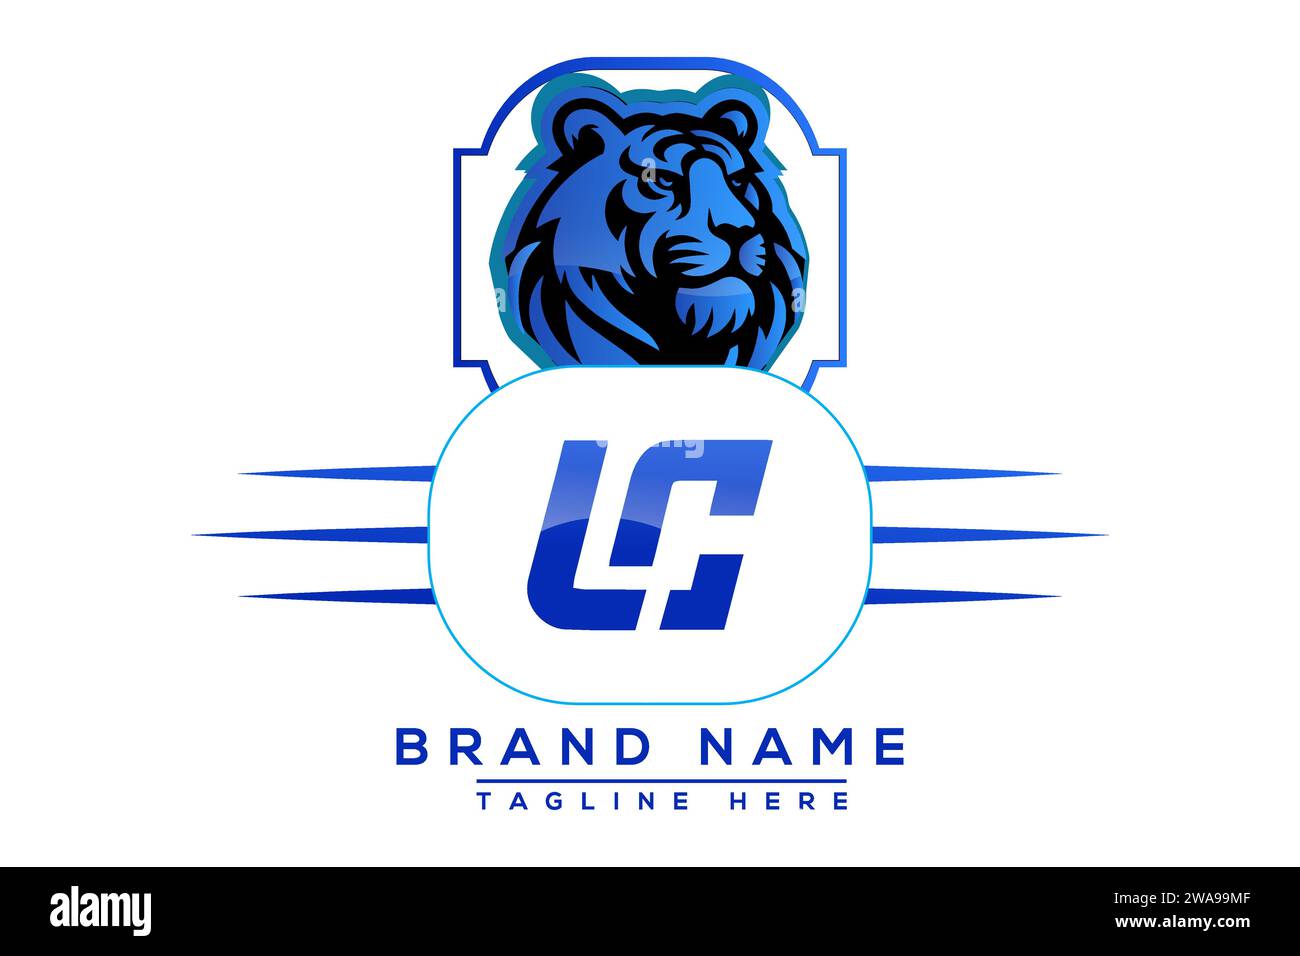 CL Tiger logo Blue Design. Vector logo design for business. Stock Vector